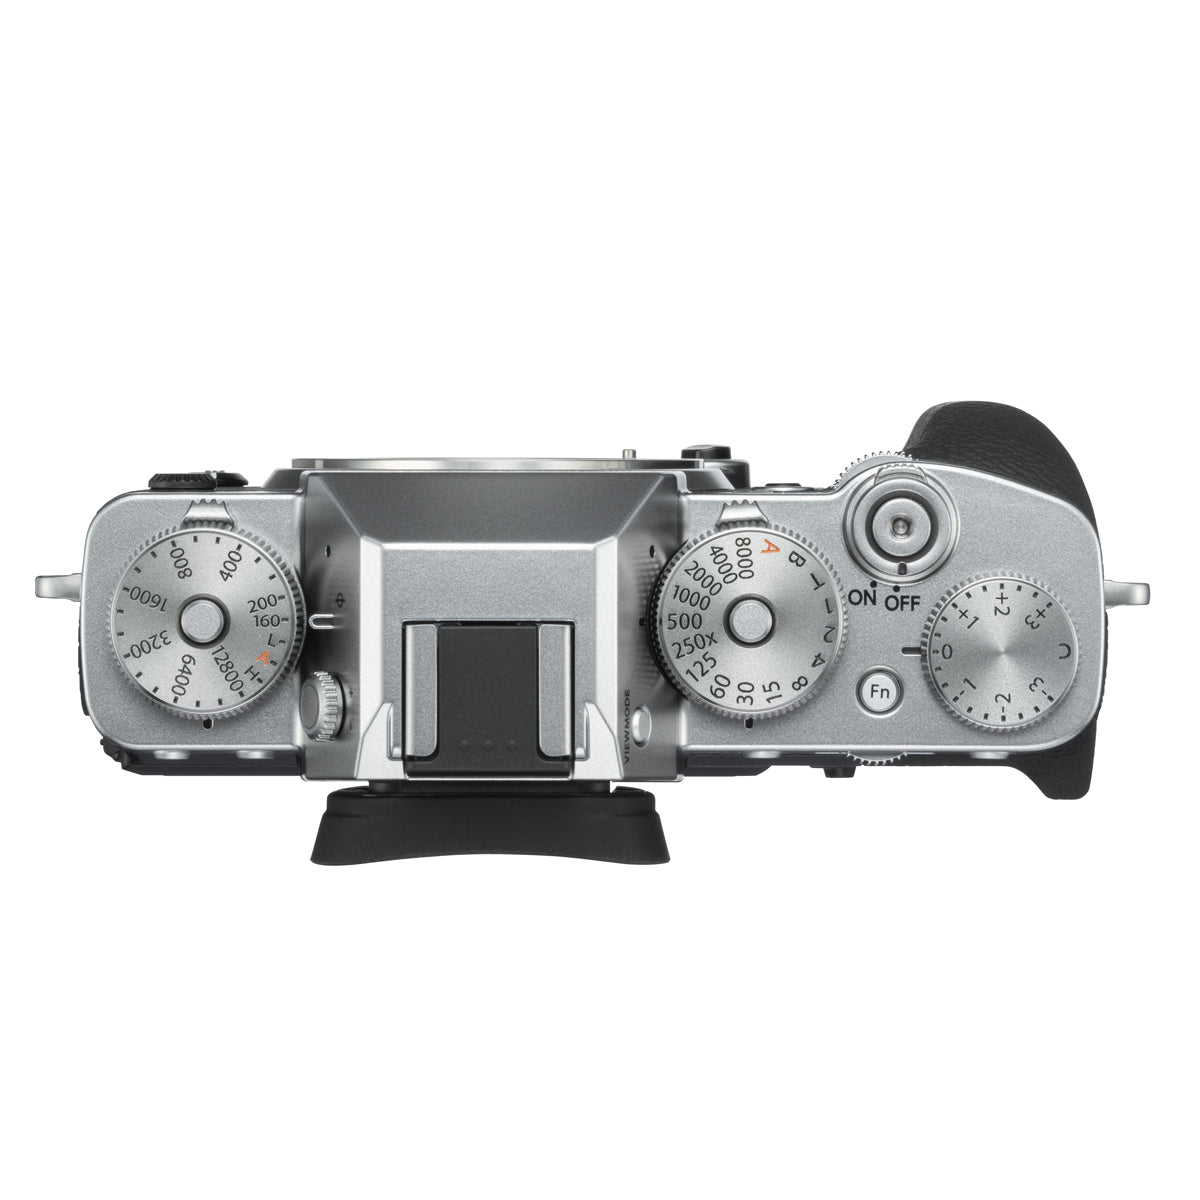 Fujifilm X-T3 Digital Camera Body (Silver)